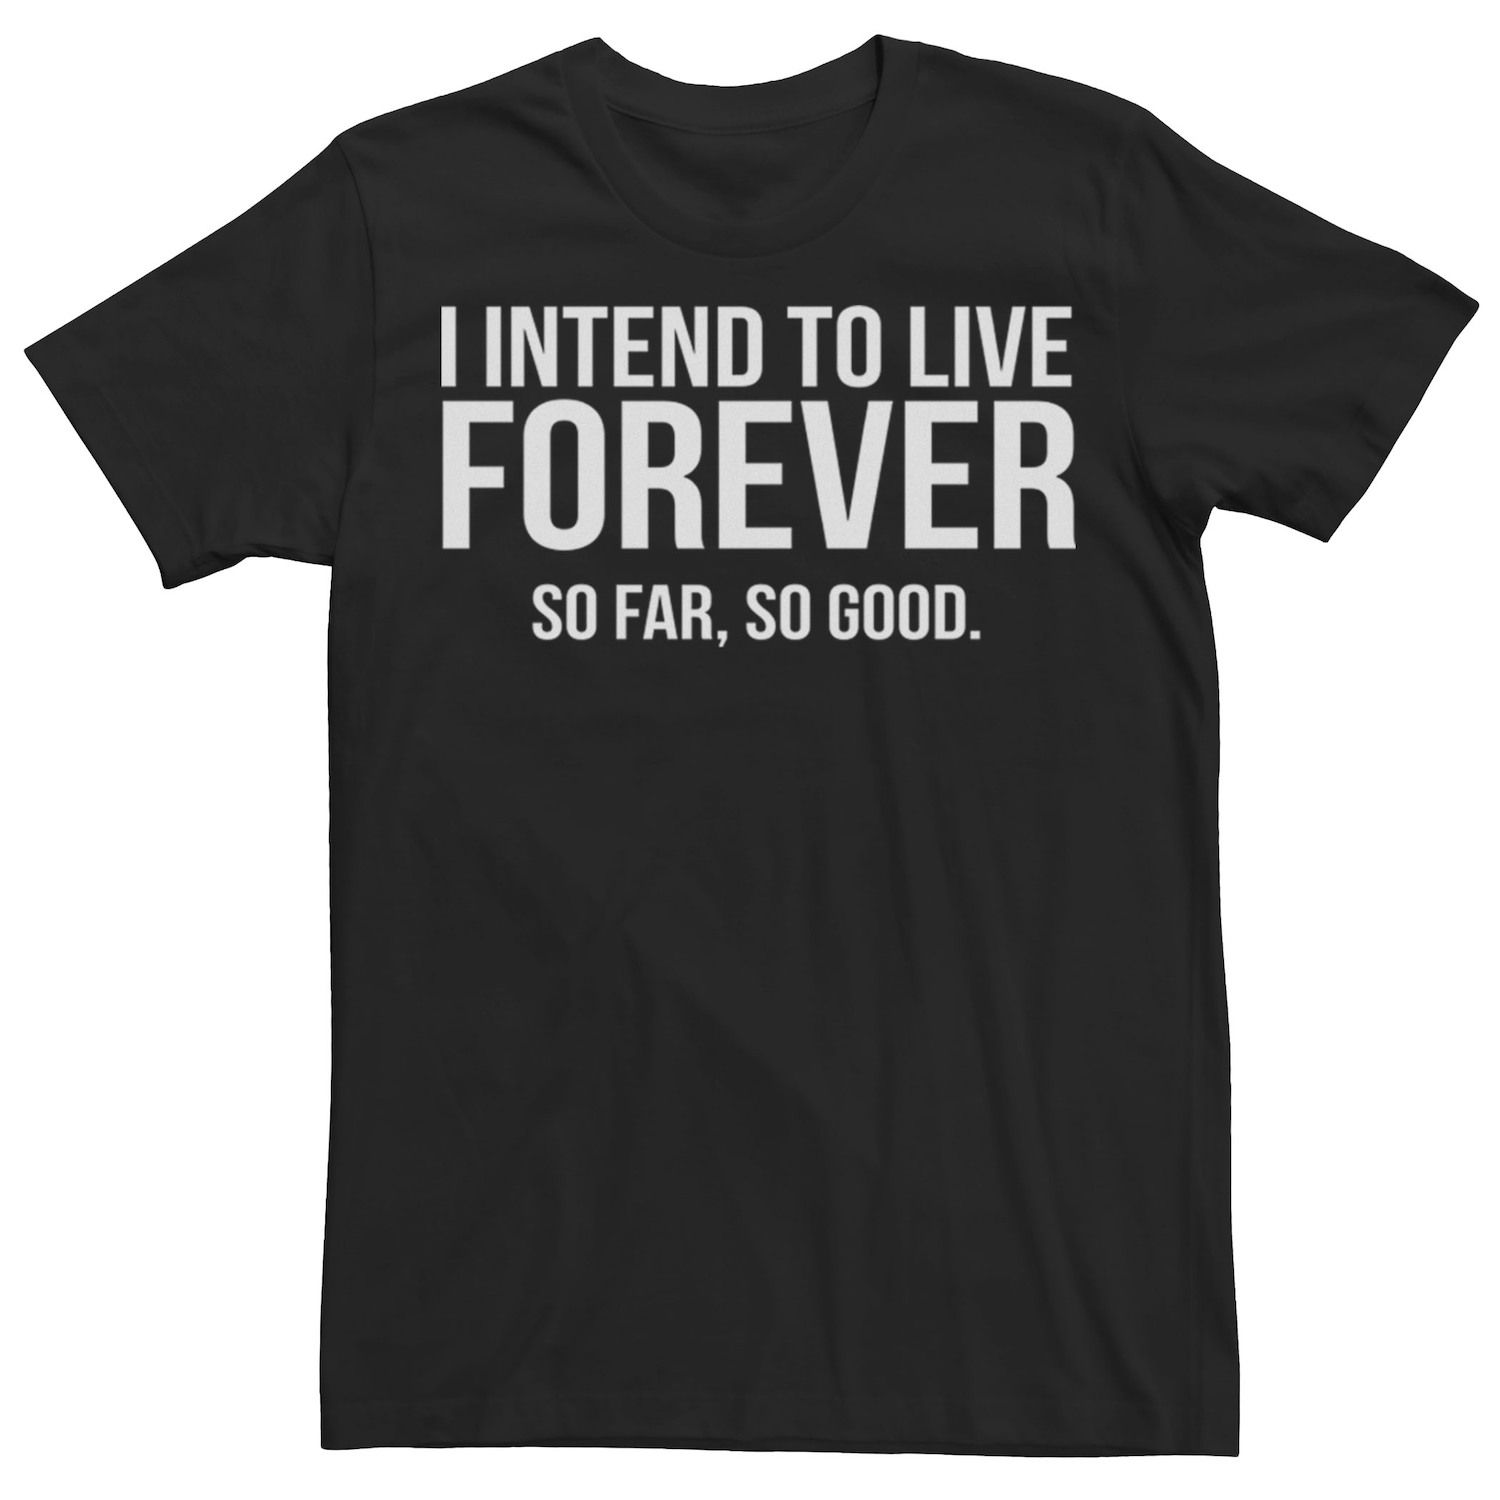 Мужская универсальная футболка с надписью Live Forever Humor Licensed Character